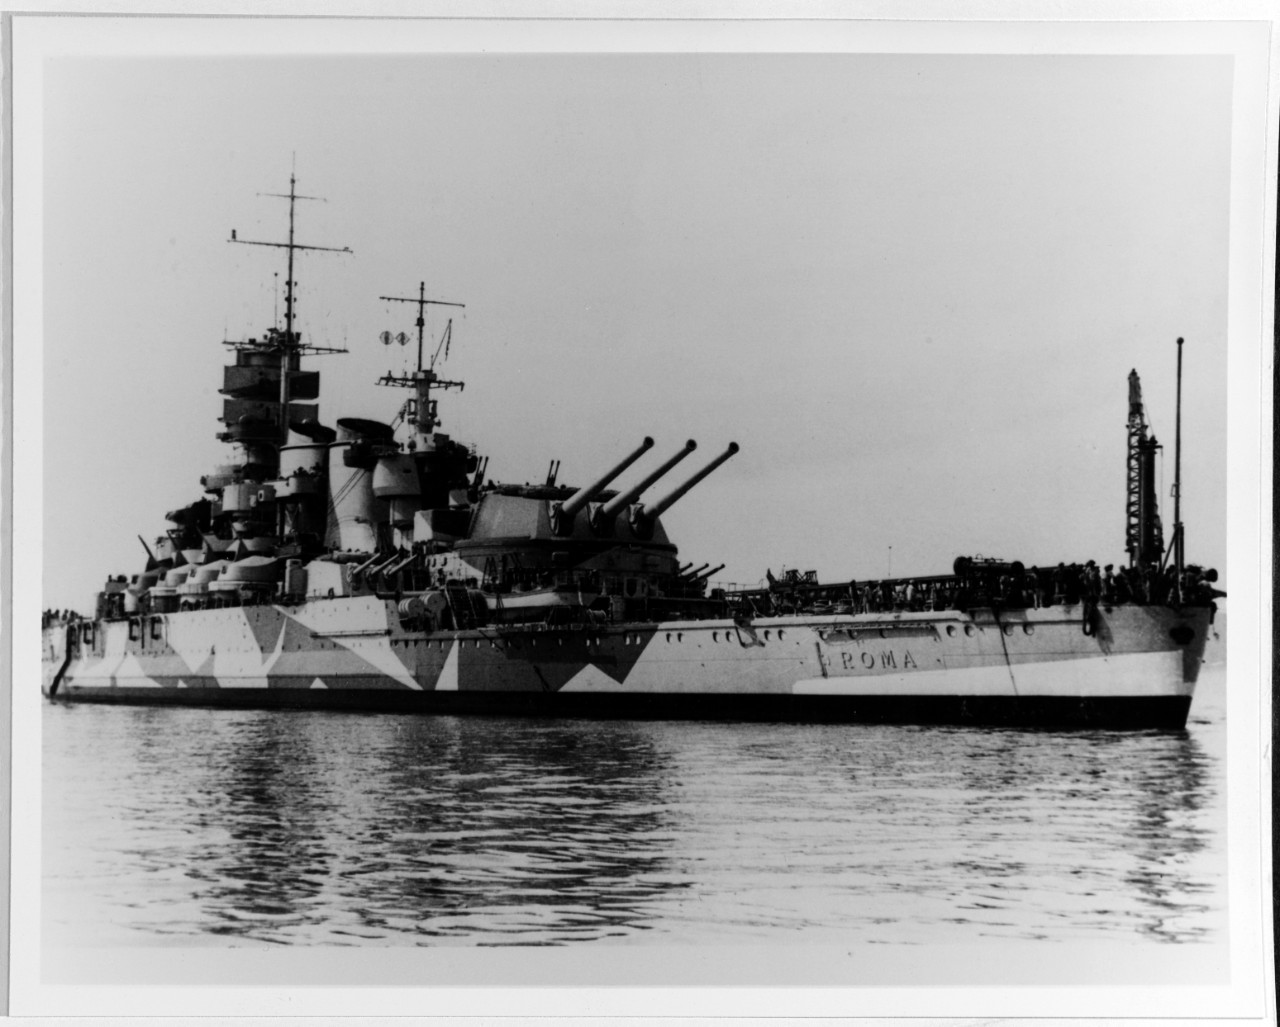 ROMA (Italian Battleship, 1940)